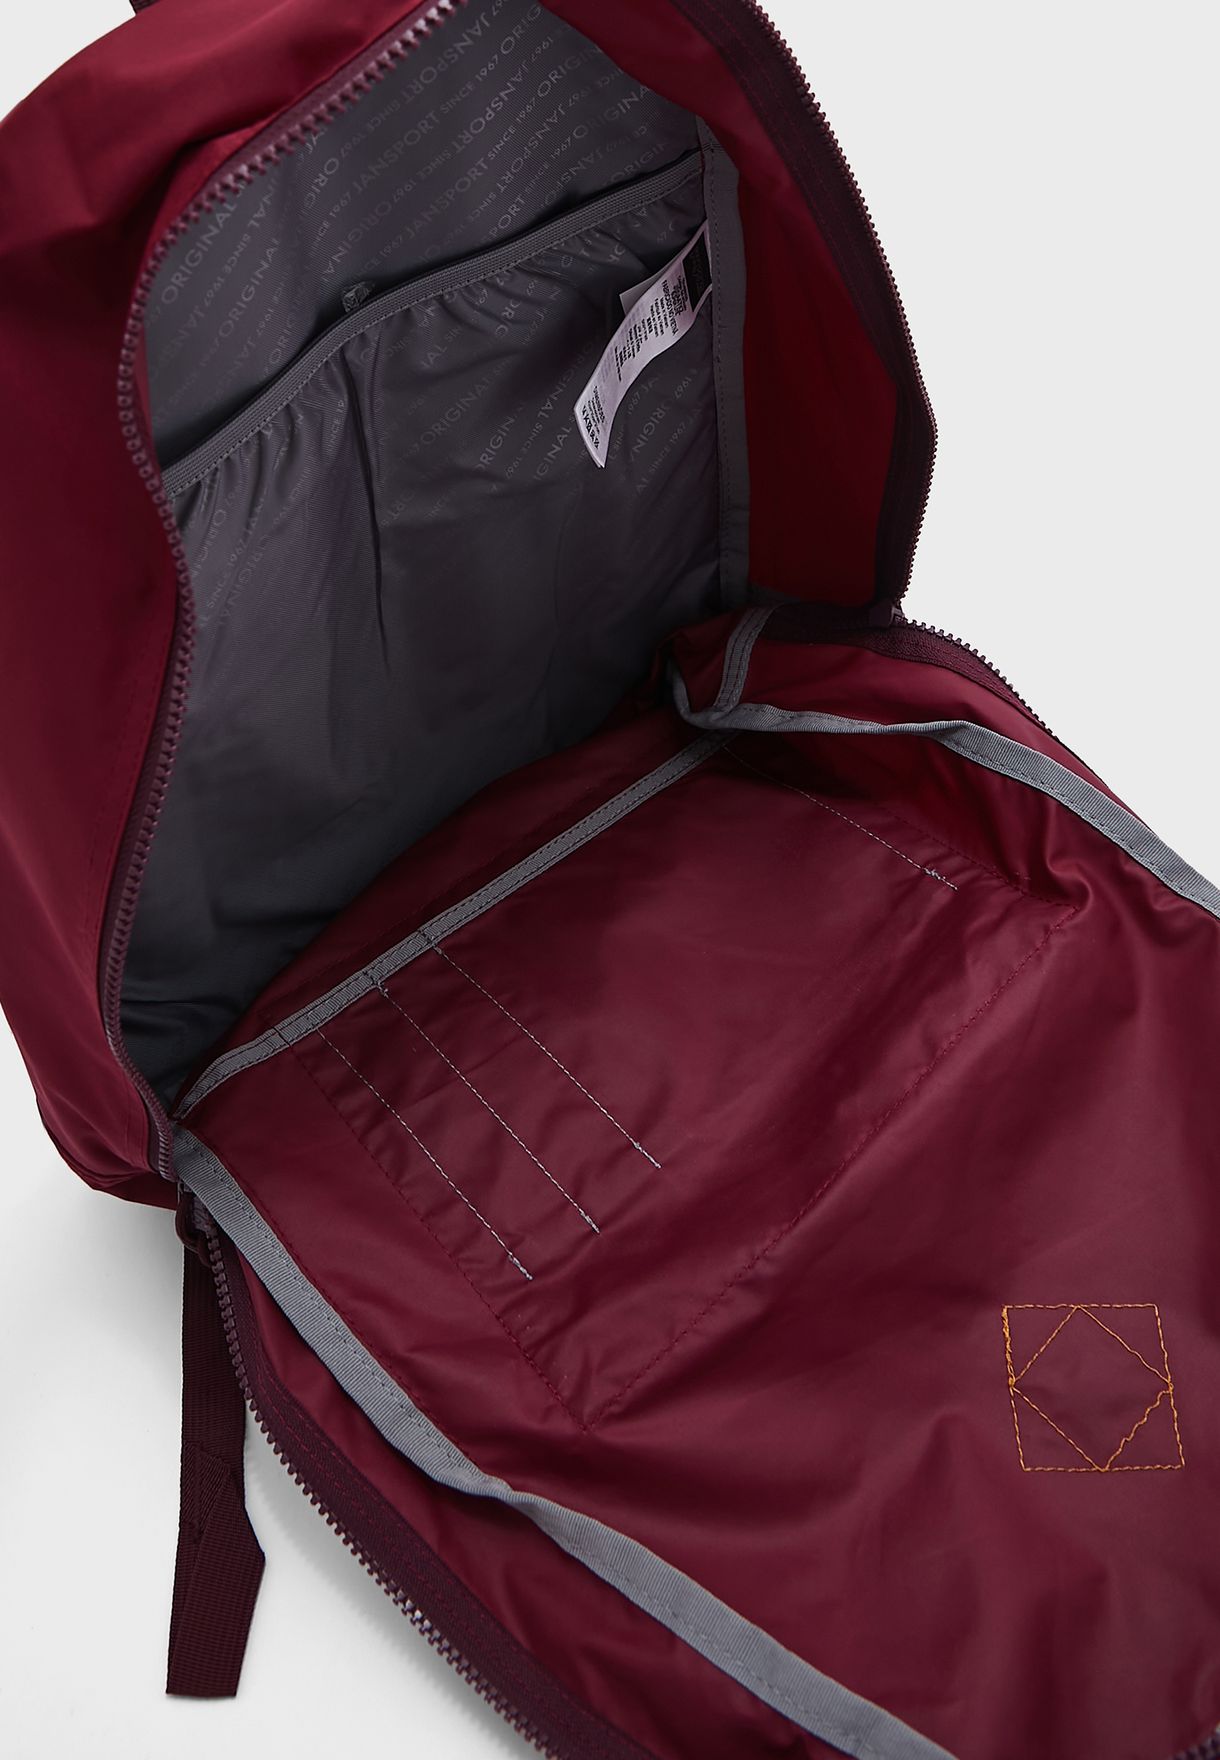 Super Lite Backpack